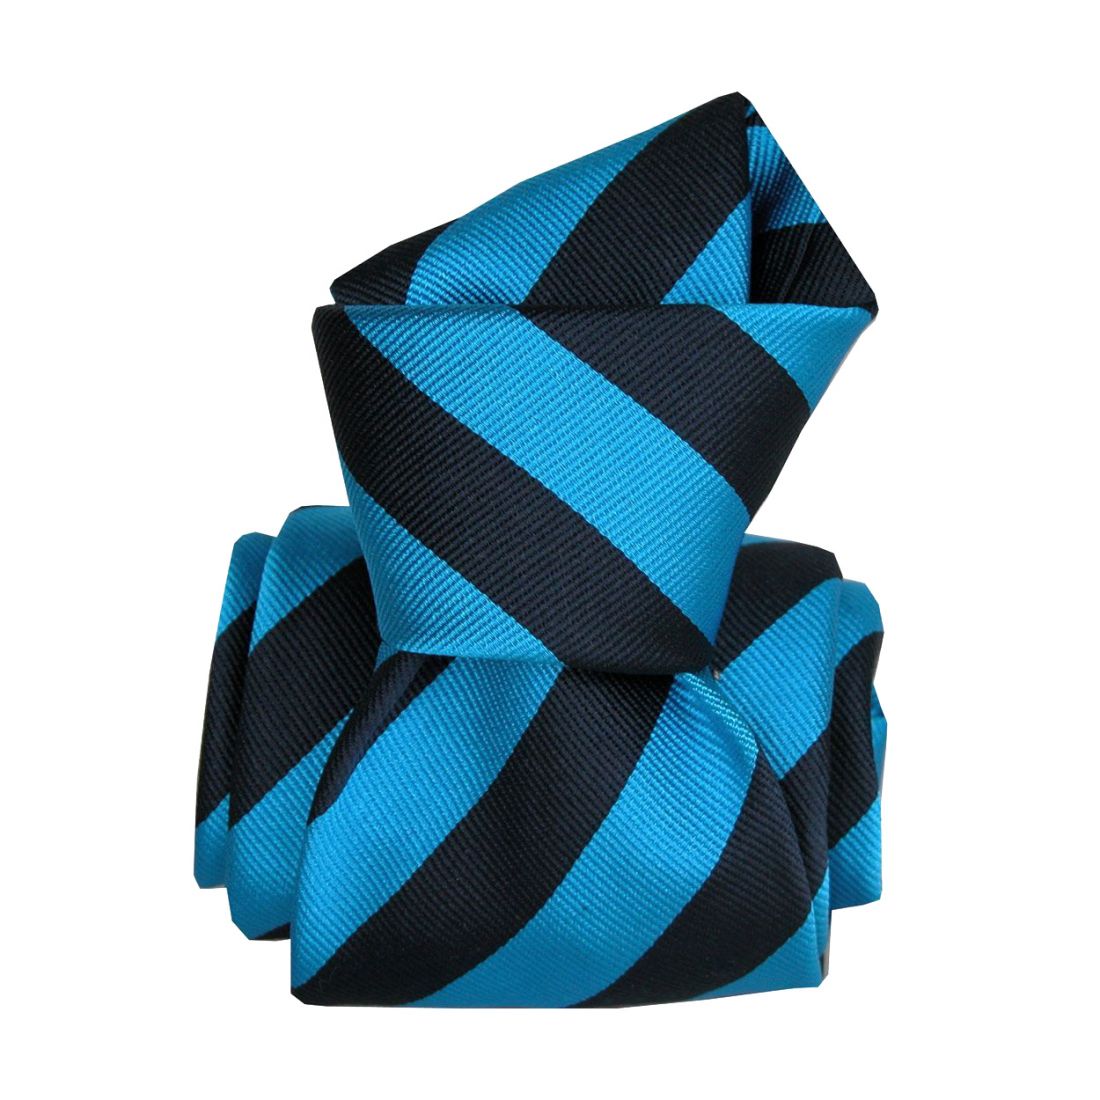 Segni et Disegni. Cravate artisanale. Confection main, Soie. Bleu, Club /  rayé. | eBay